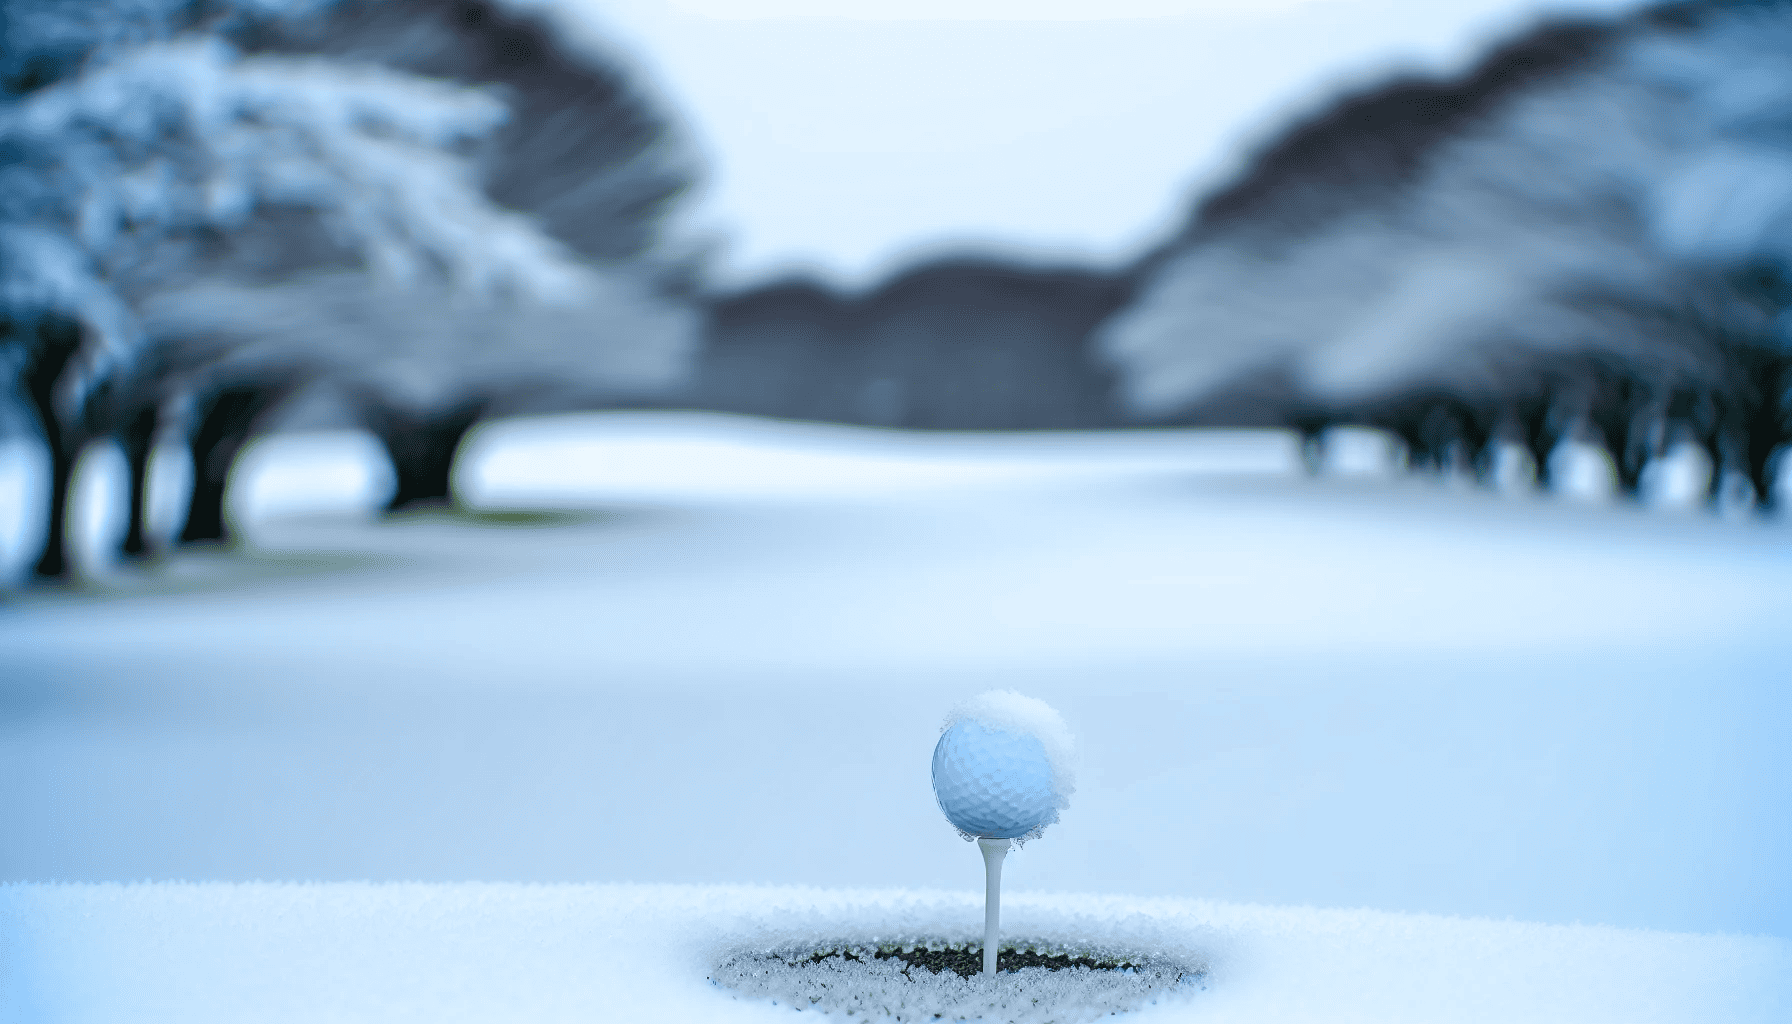 Golf ball on snowy course